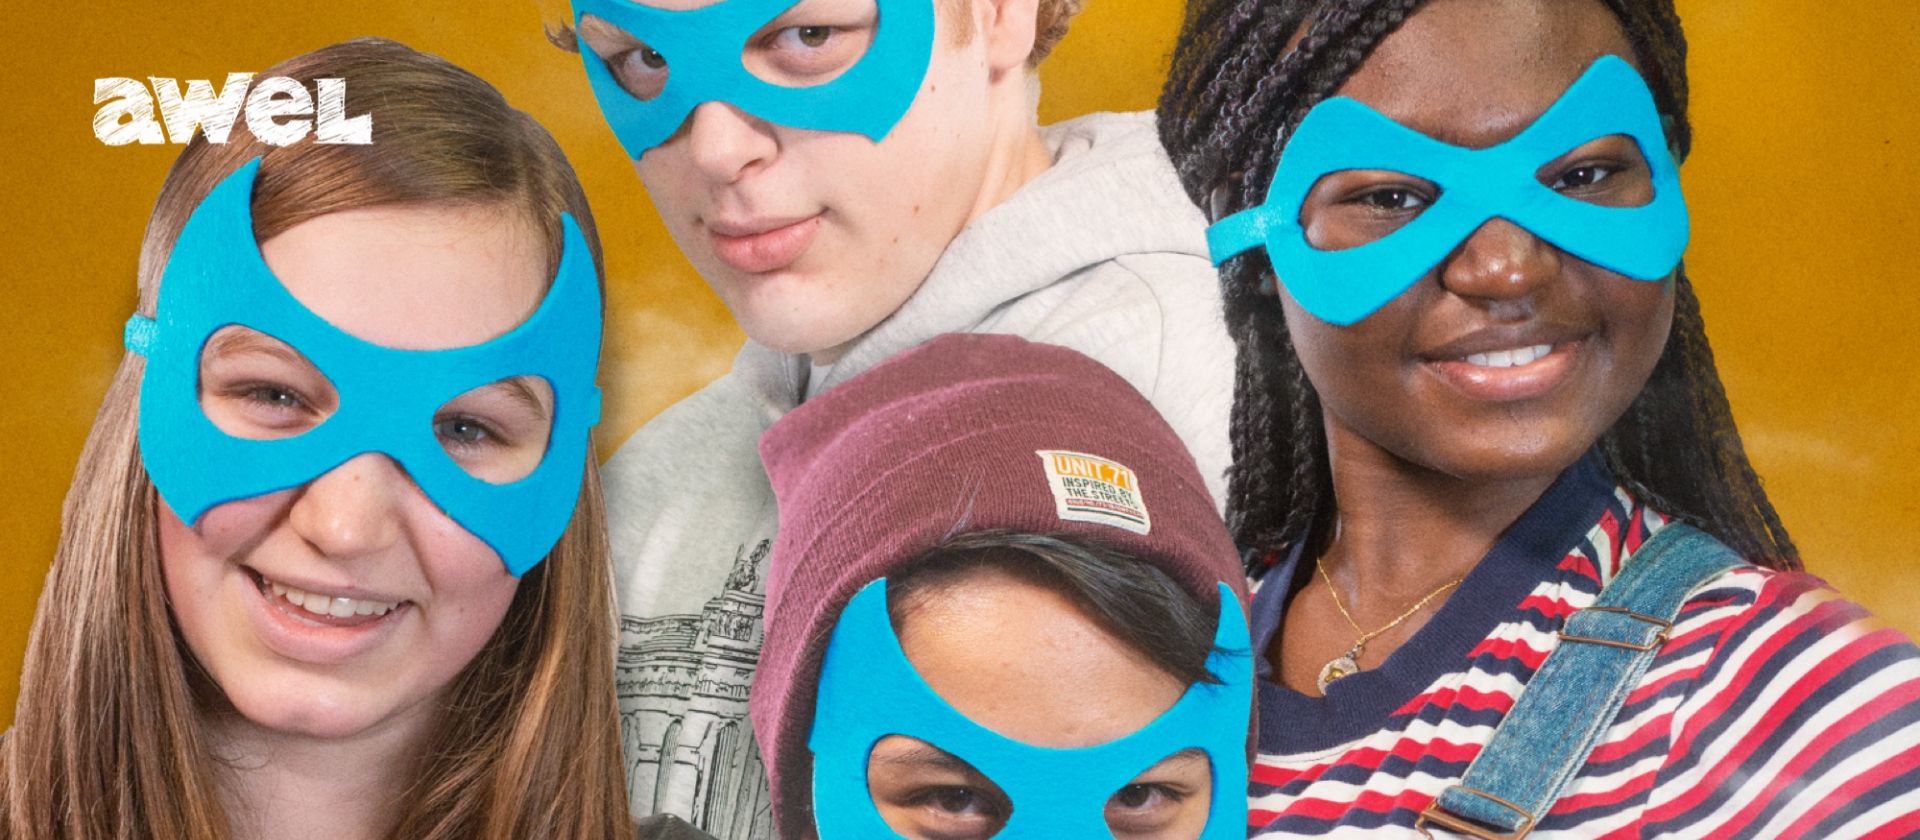 Awel - luistert naar kinderen en jongeren - afbeelding met 4 jongeren die een blauw superman masker dragen